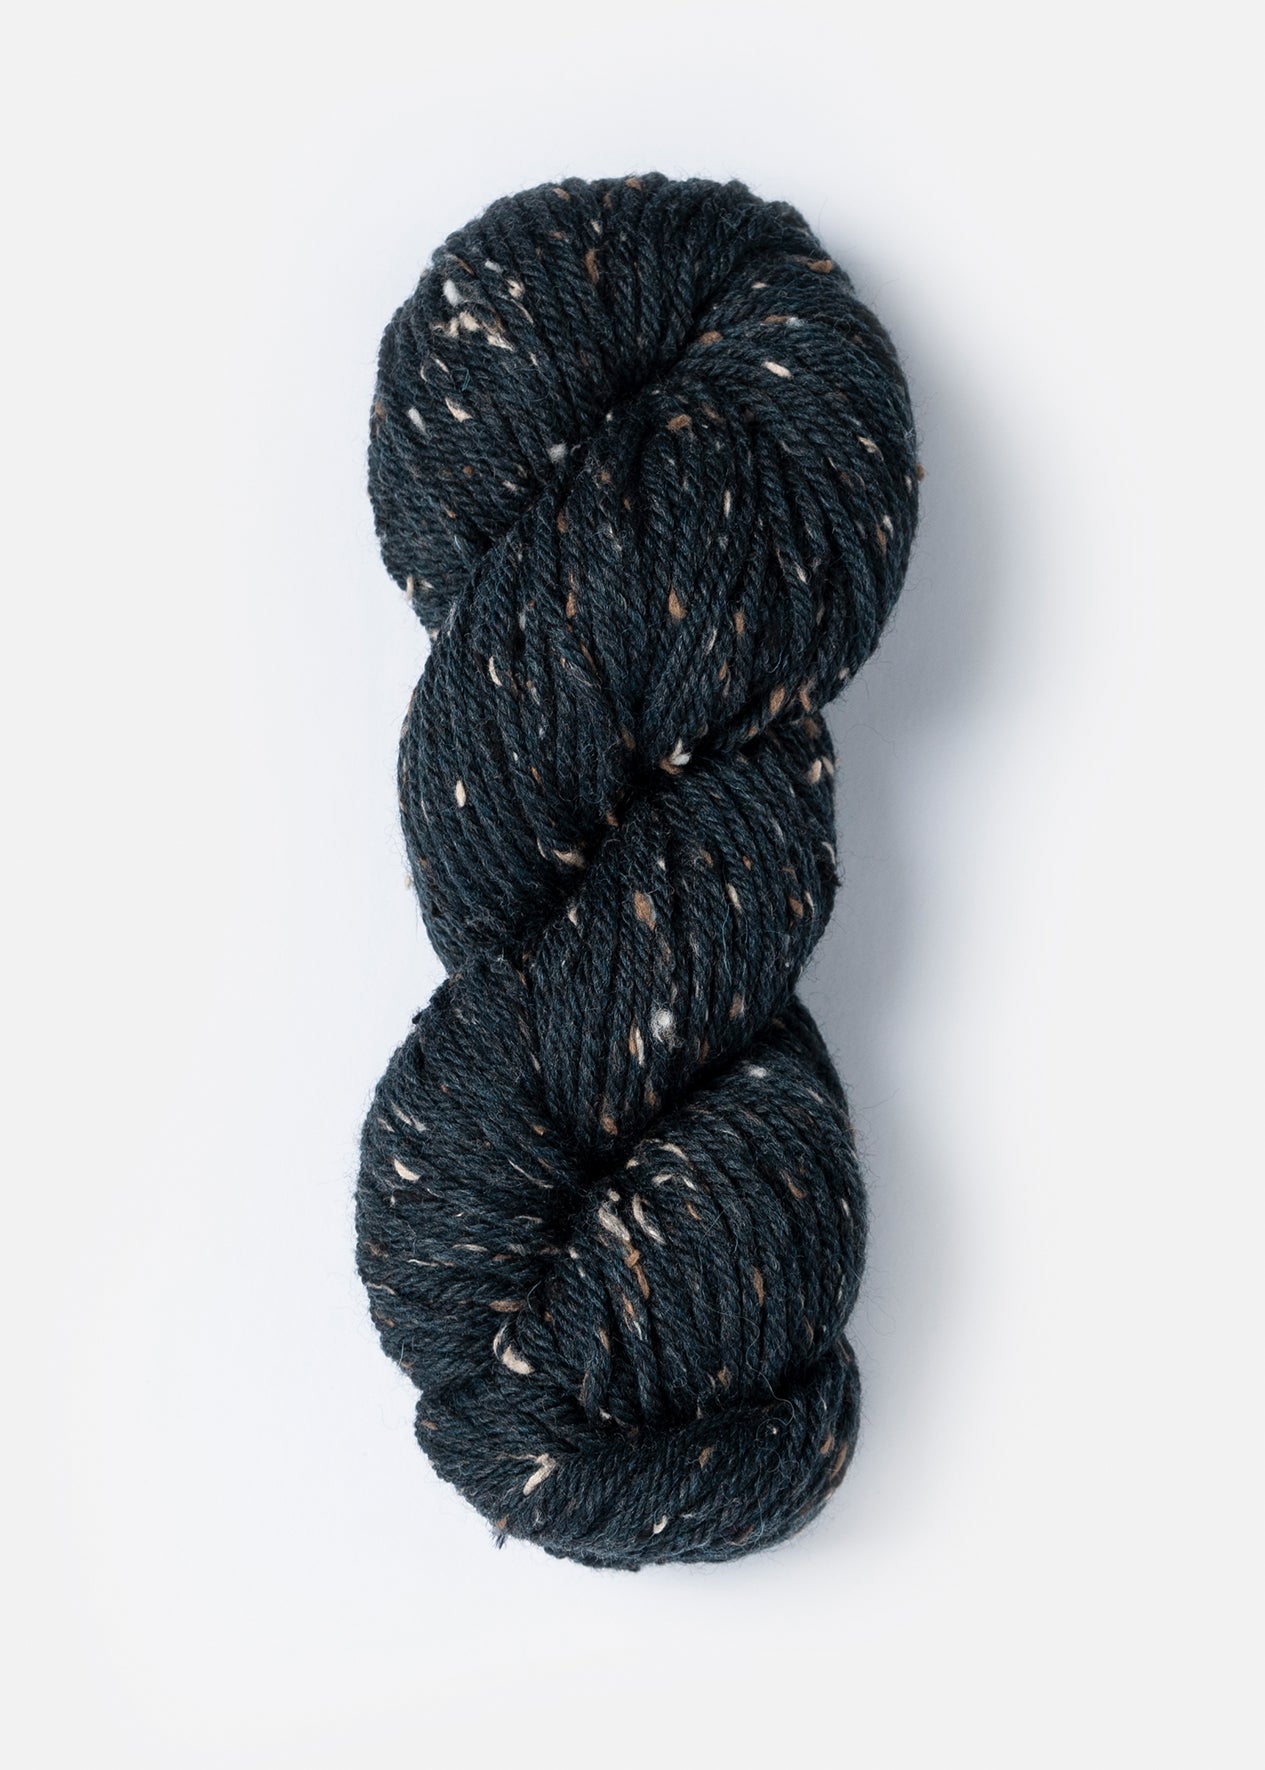 Woolstok Tweed from Blue Sky Fibers